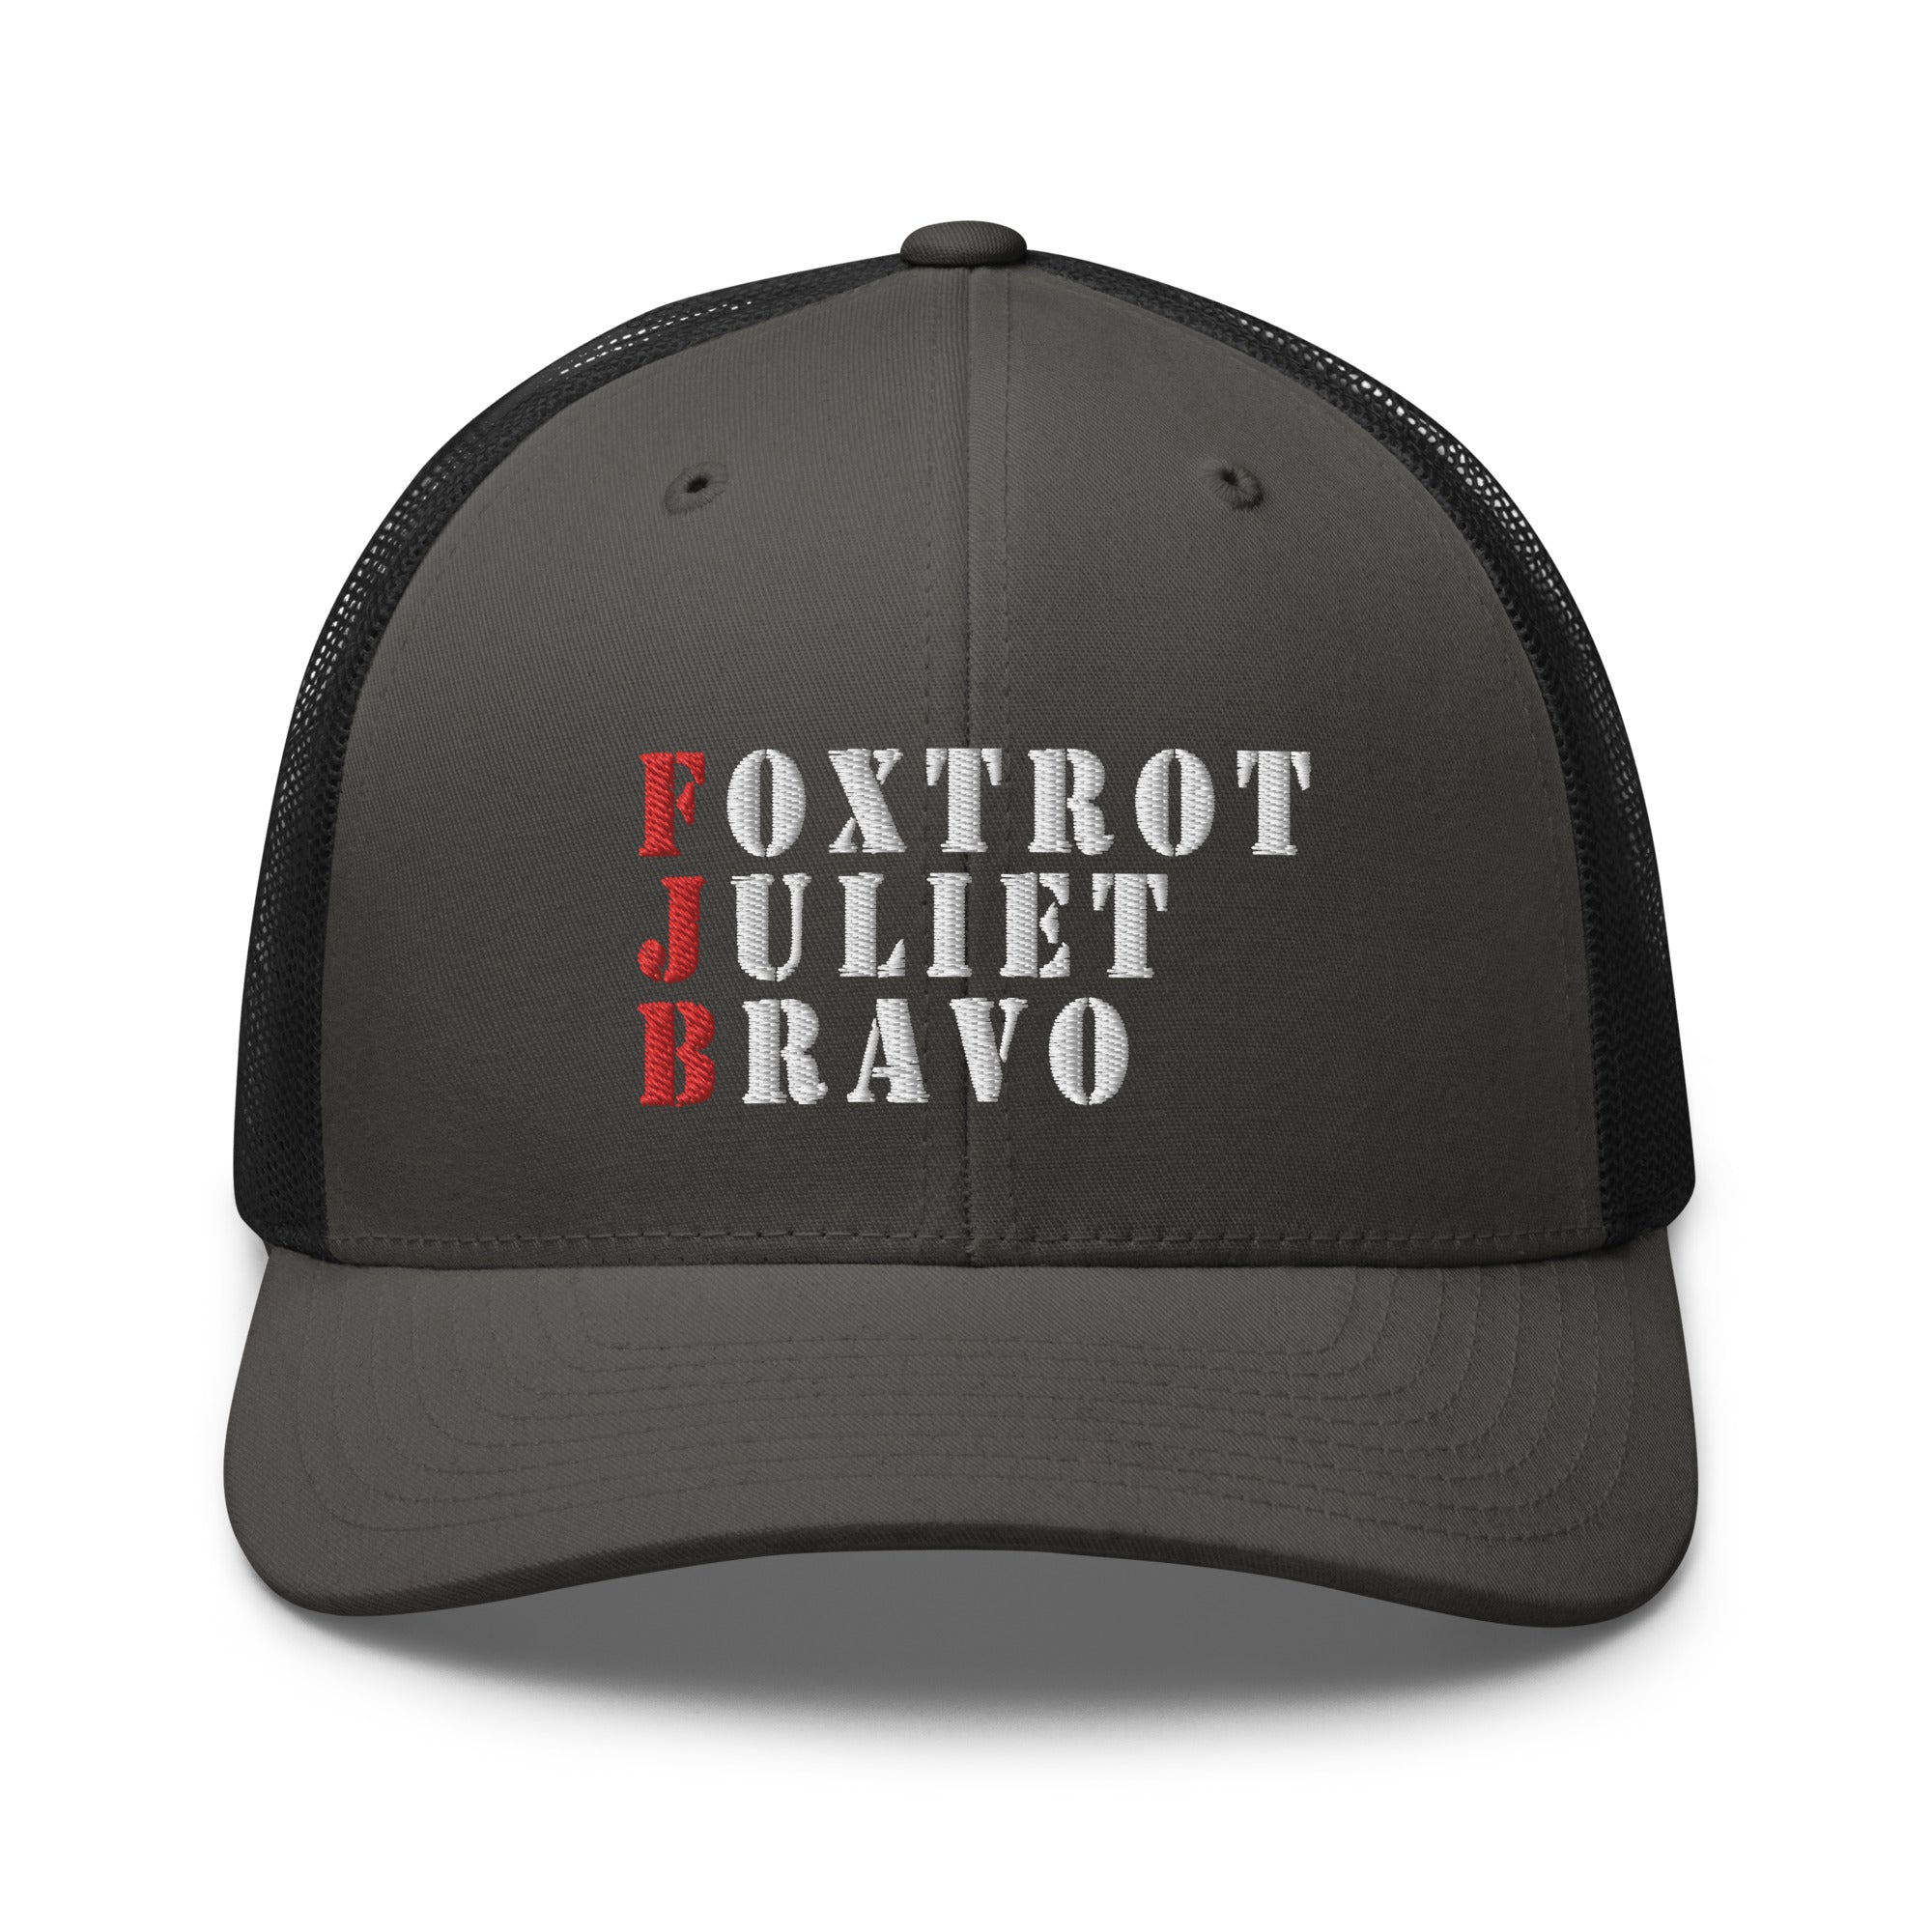 Foxtrot Juliet Bravo FJB Trucker Cap - | Drunk America 